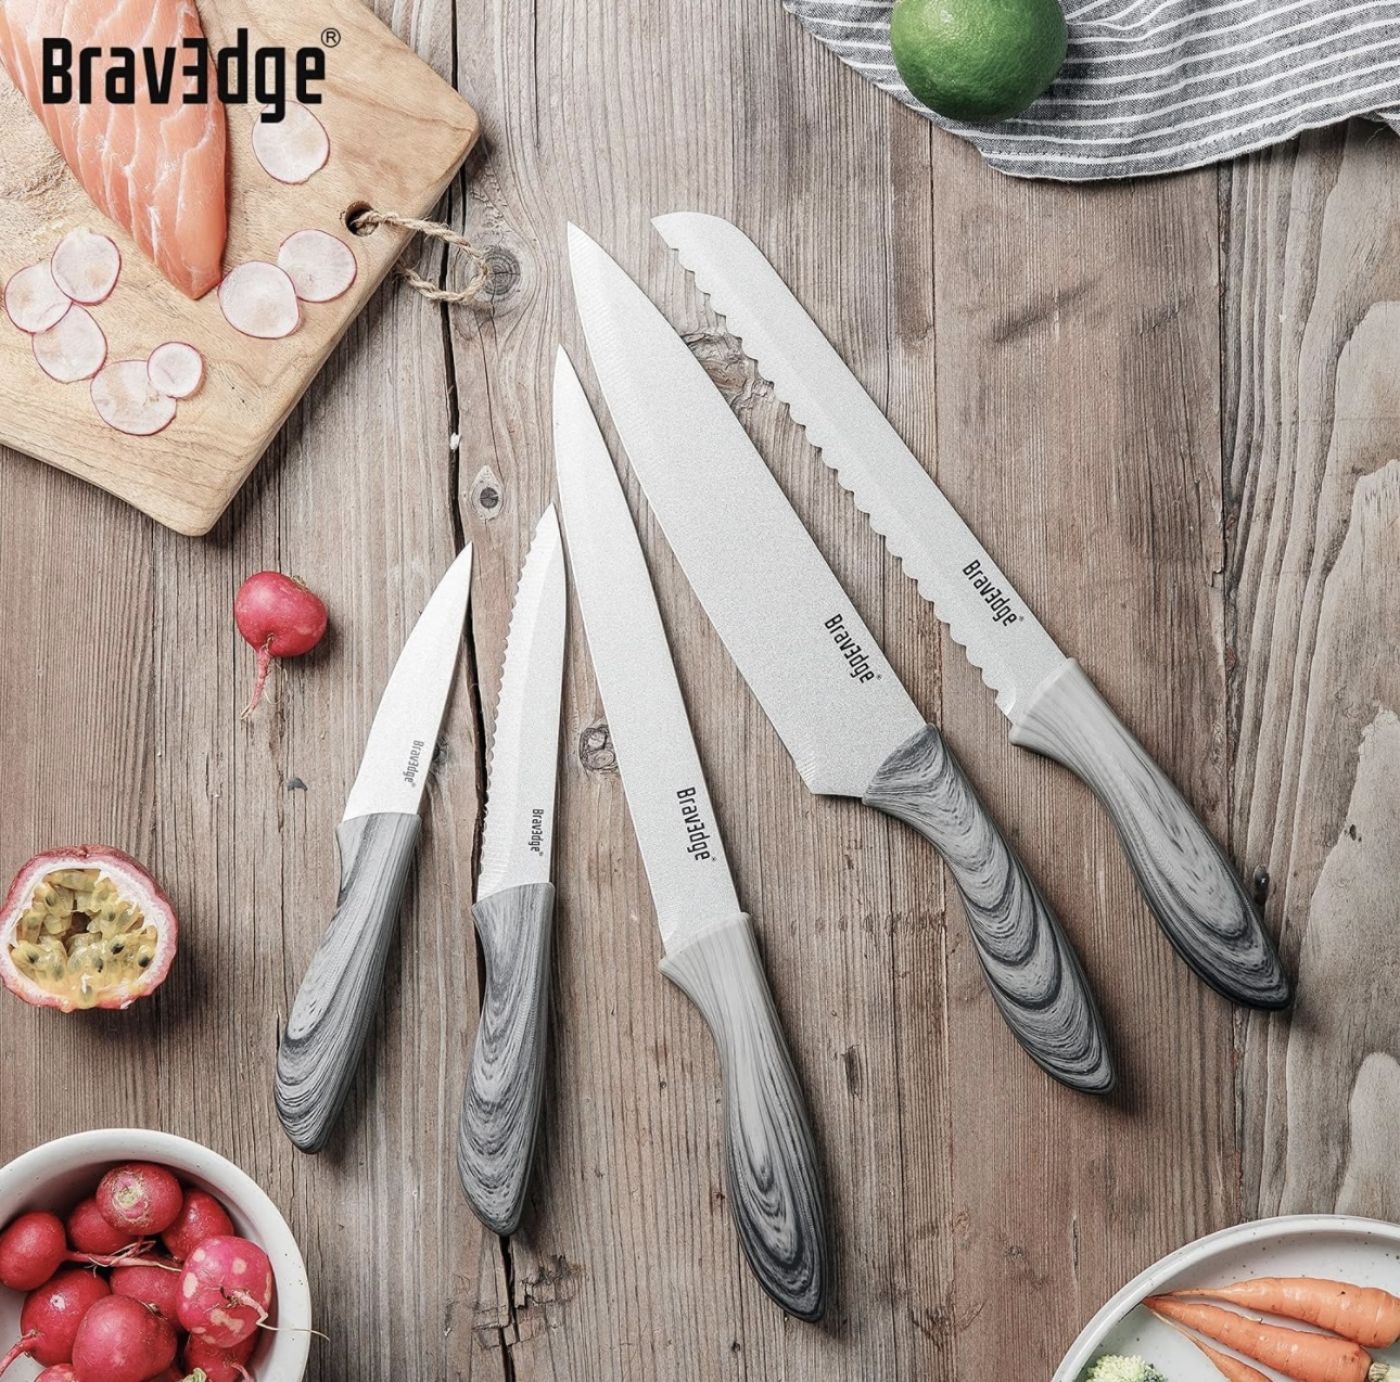 Bộ dao làm bếp chuyên nghiệp 5 món hãng Bravedge ( Amazon Mỹ ) thép không gỉ , có bọc dao